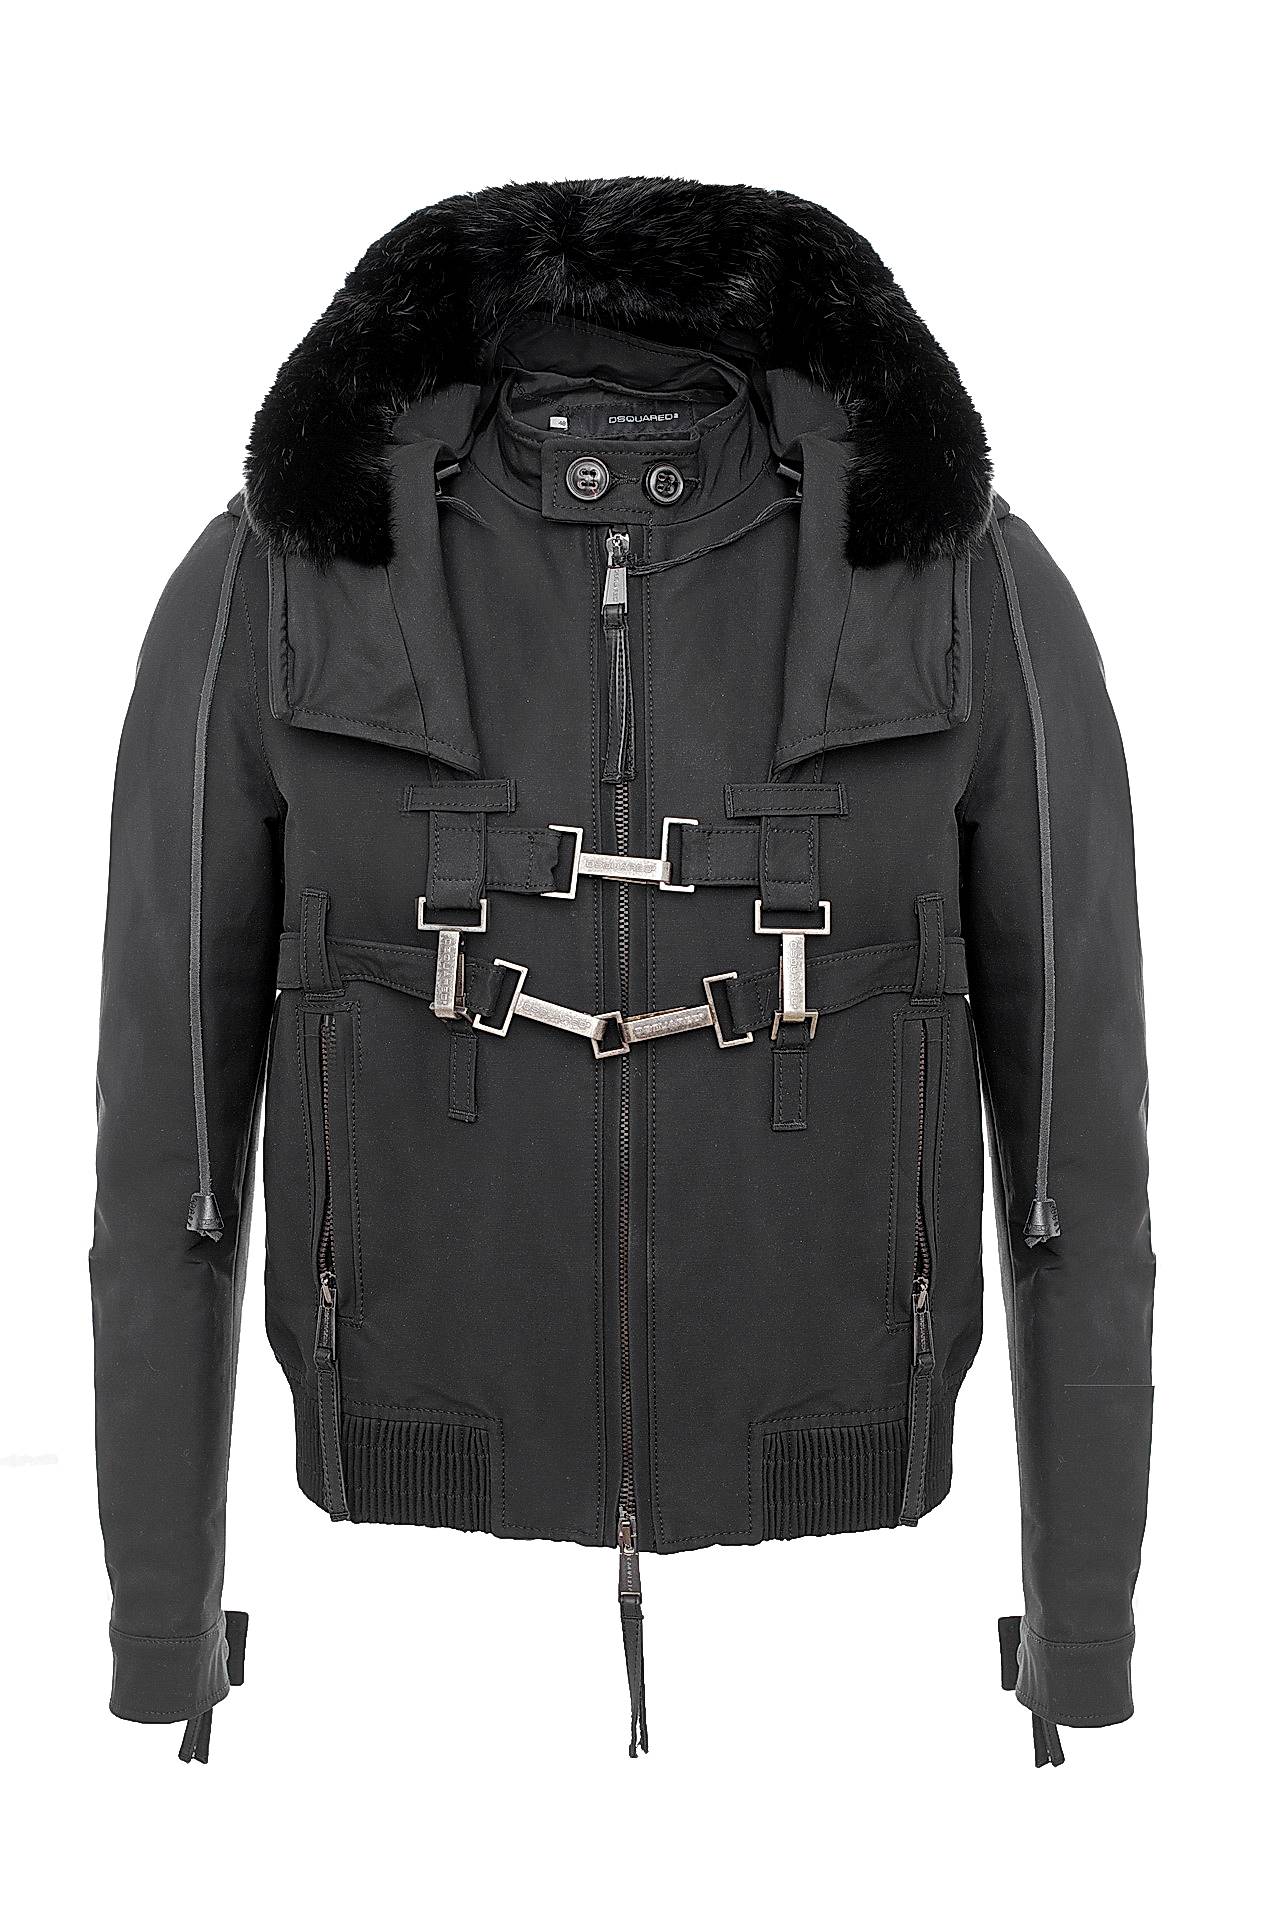 Одежда мужская Куртка DSQUARED2 (71AM119/27). Купить за 55800 руб.